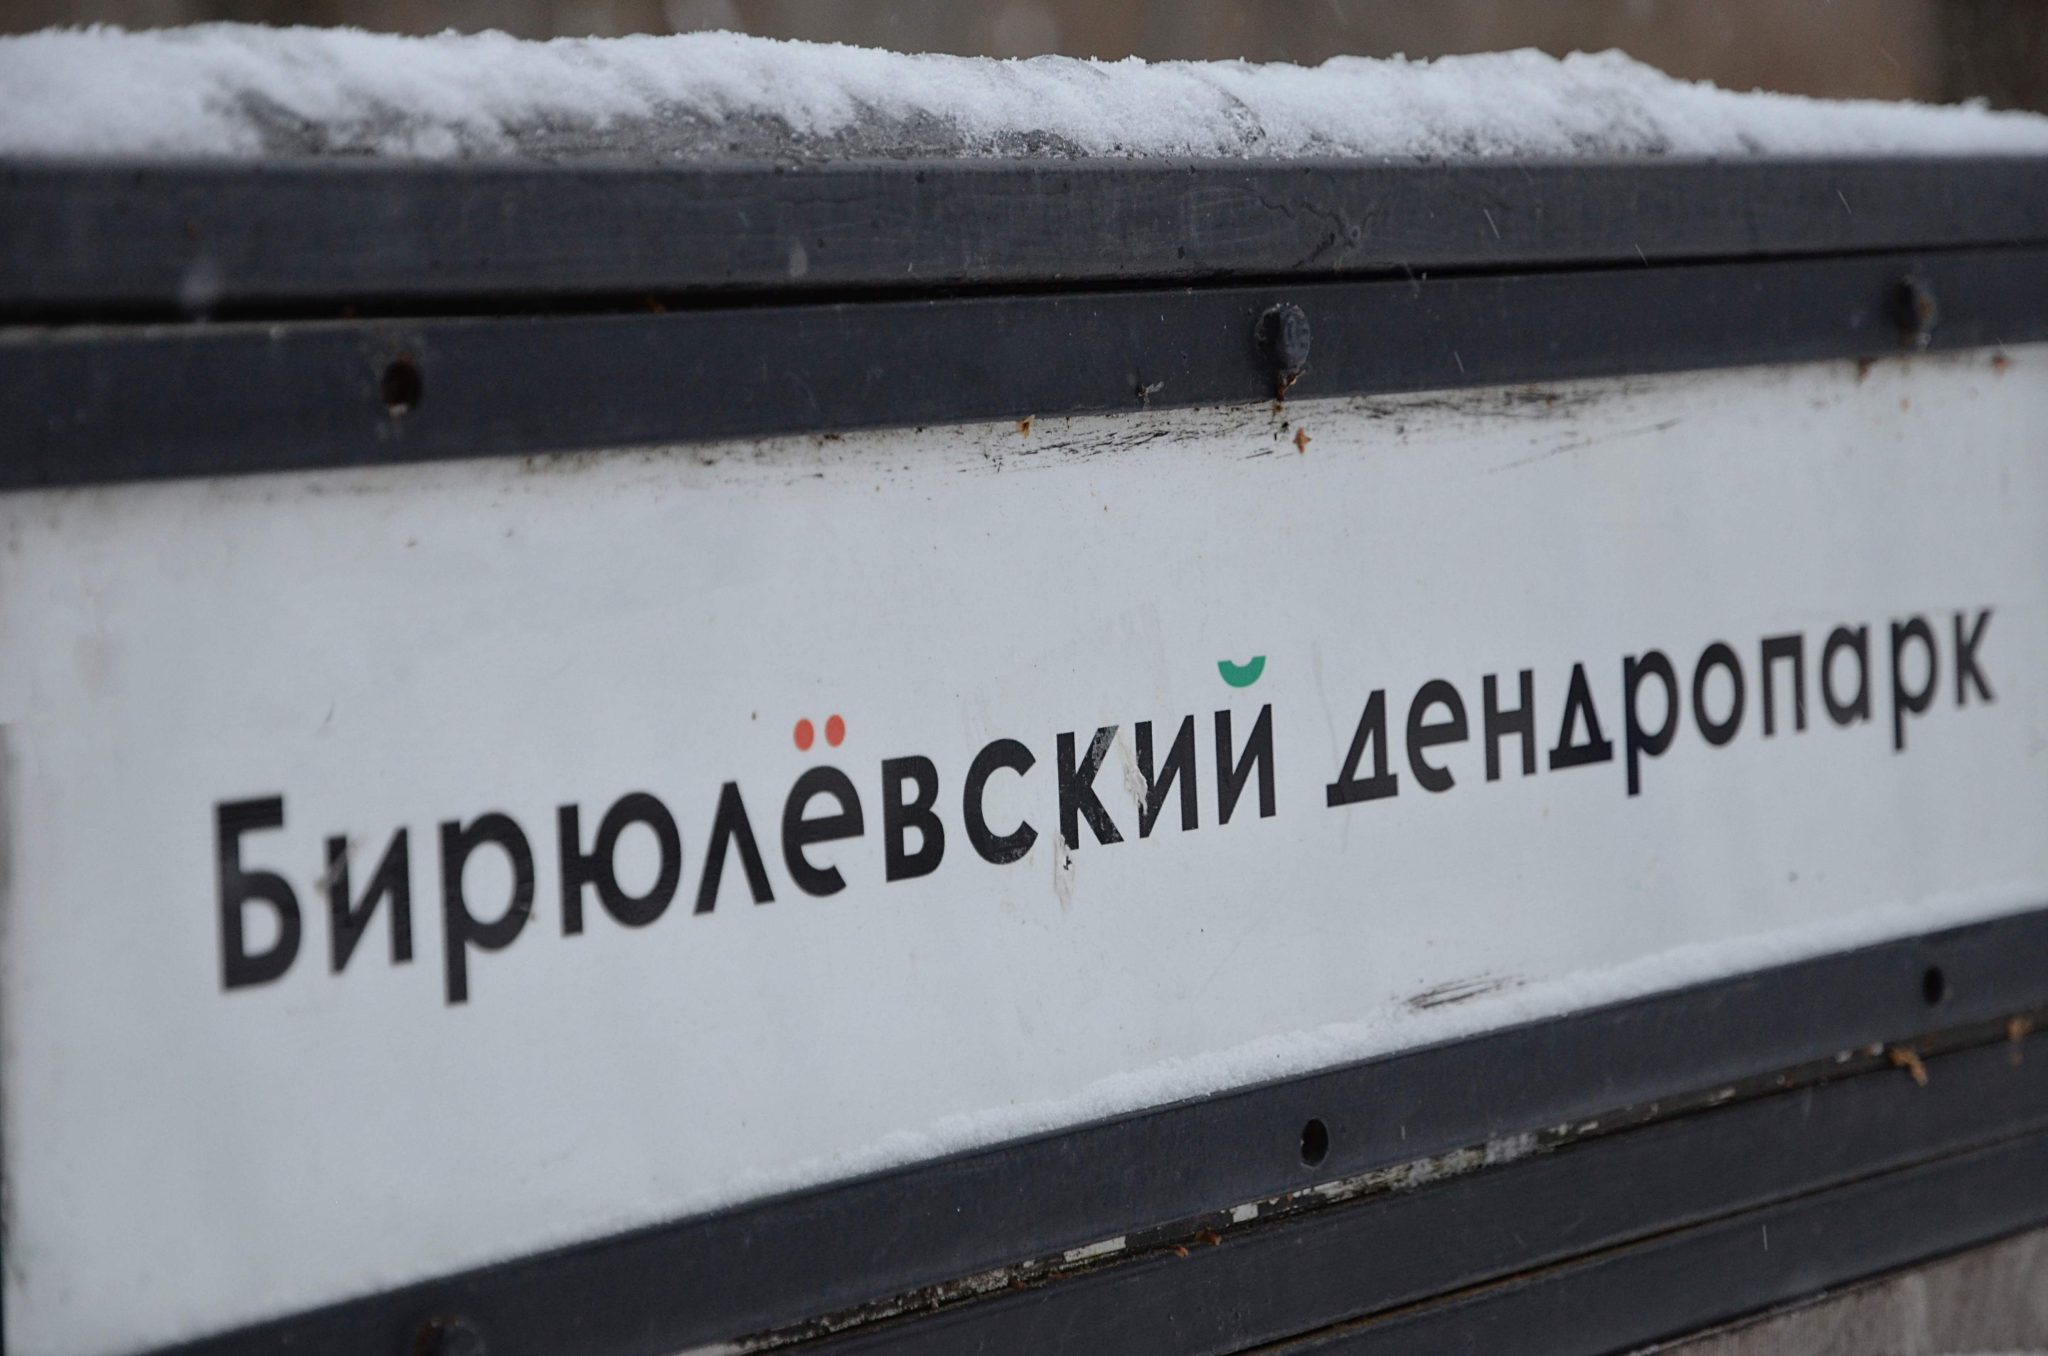 Мосприрода: В Бирюлевском дендропарке запланировали мероприятия